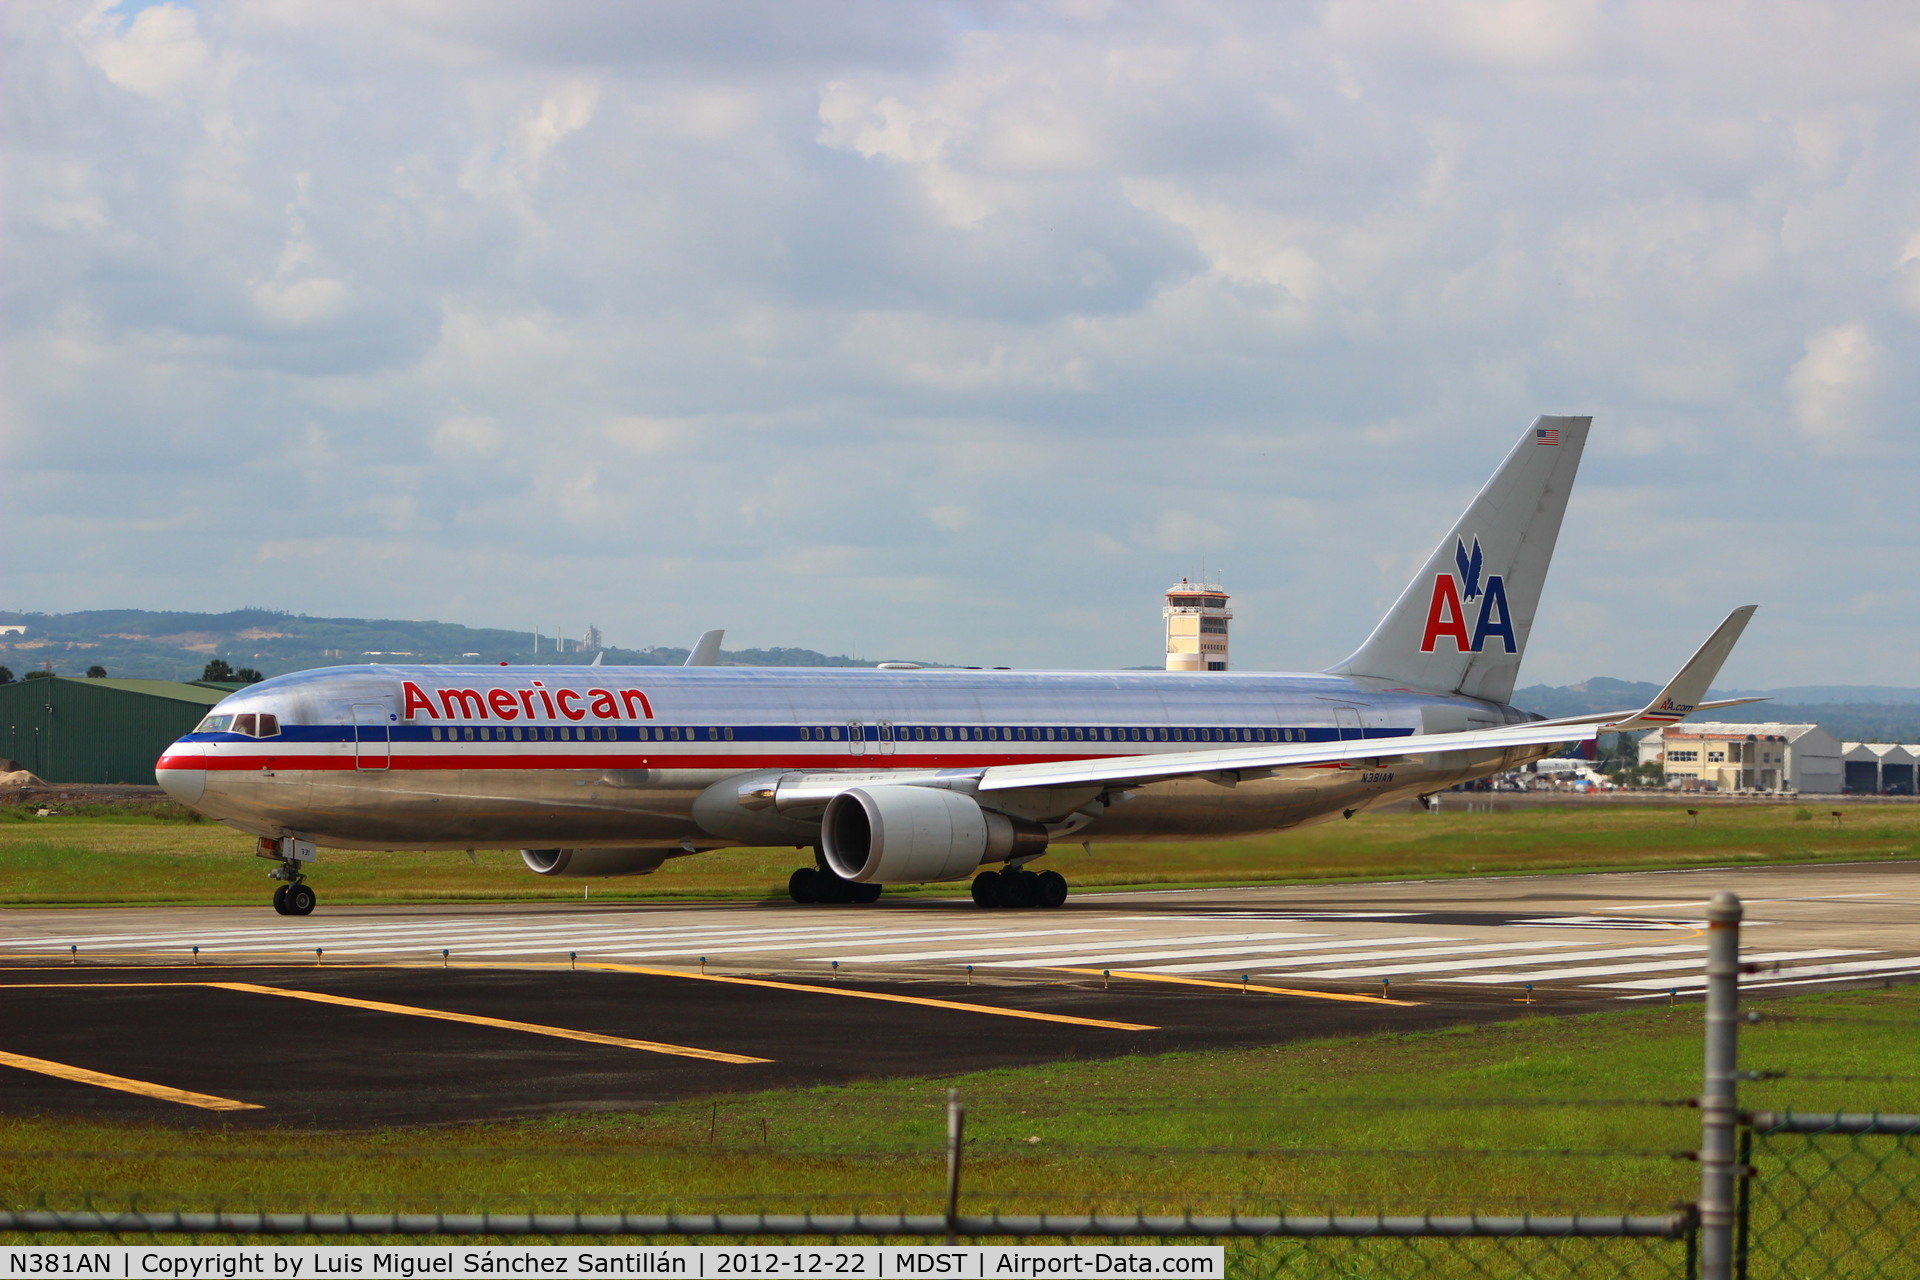 N381AN, 1993 Boeing 767-323 C/N 25450, American Airlines flight 697 arriving from New York JFK.Boeing 767-300ER/W (N381AN)